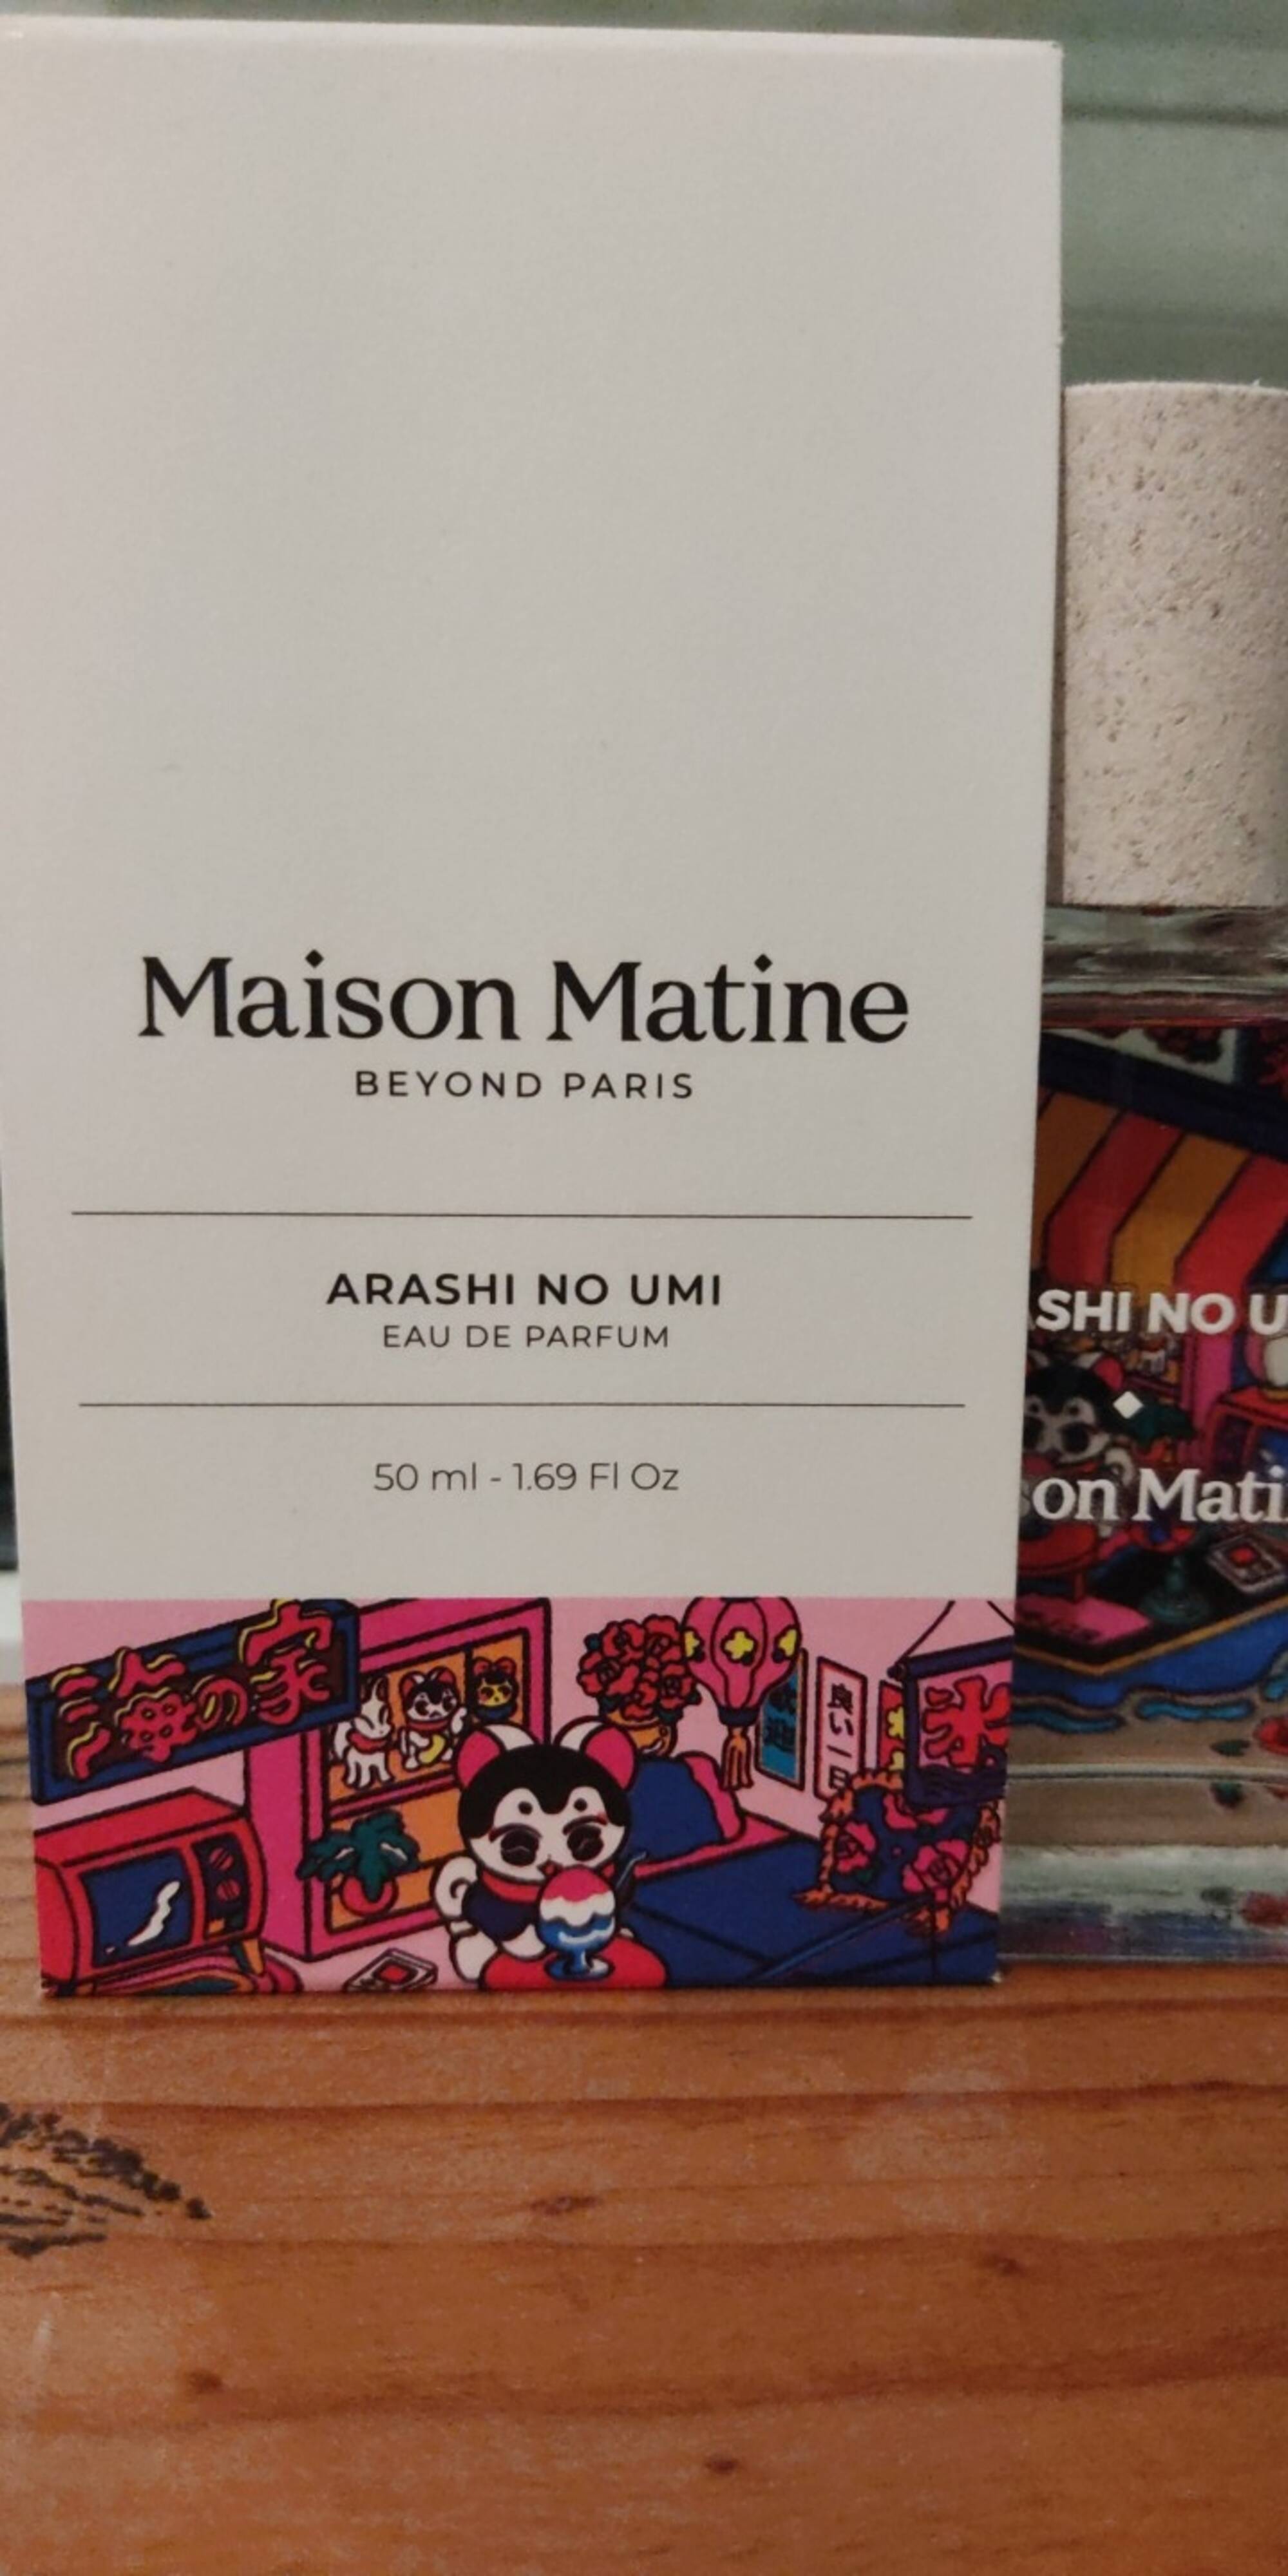 MAISON MATINE - Arashi no umi - Eau de parfum